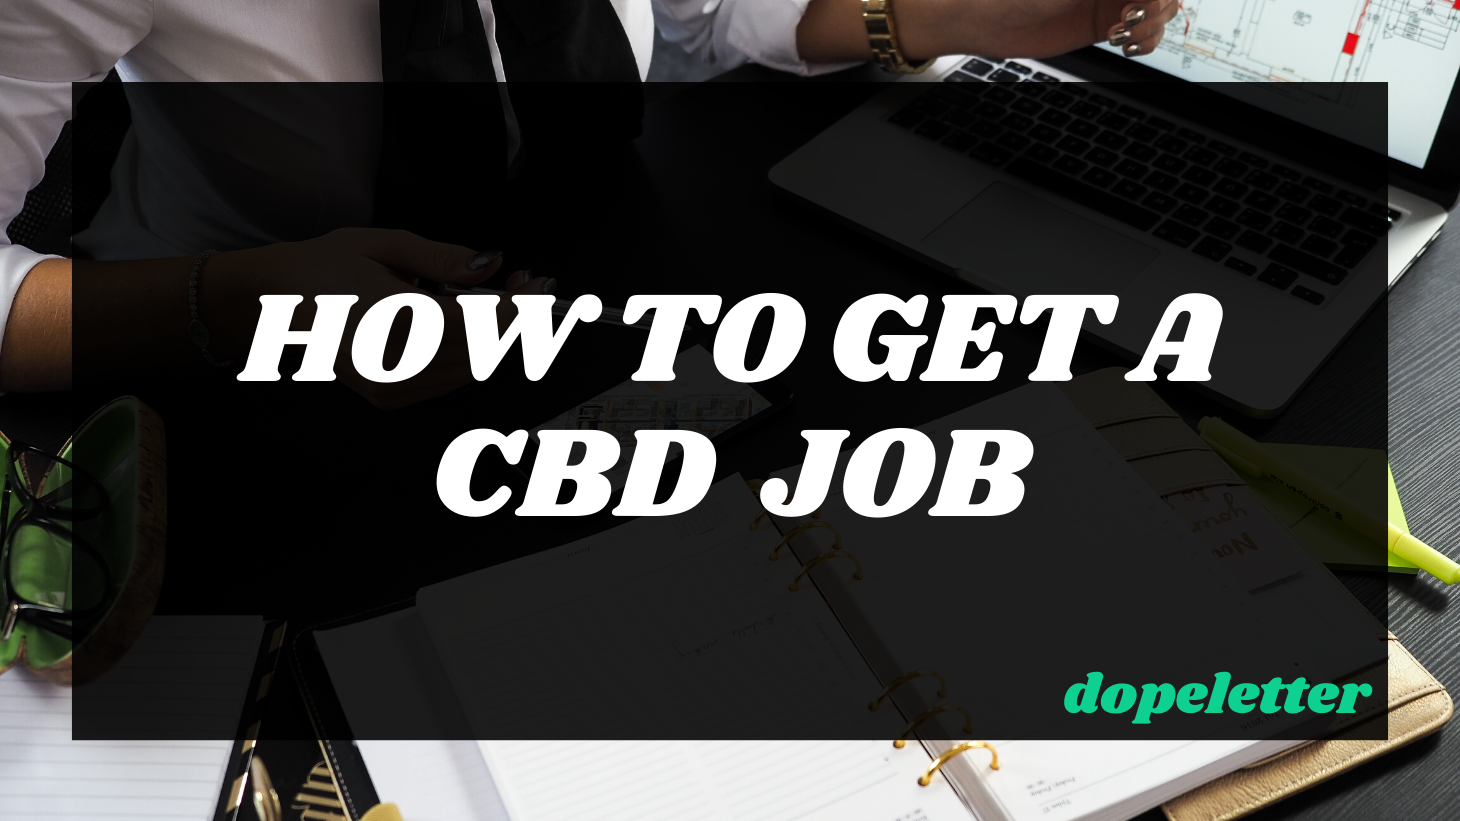 How to get CBD Sales Jobs